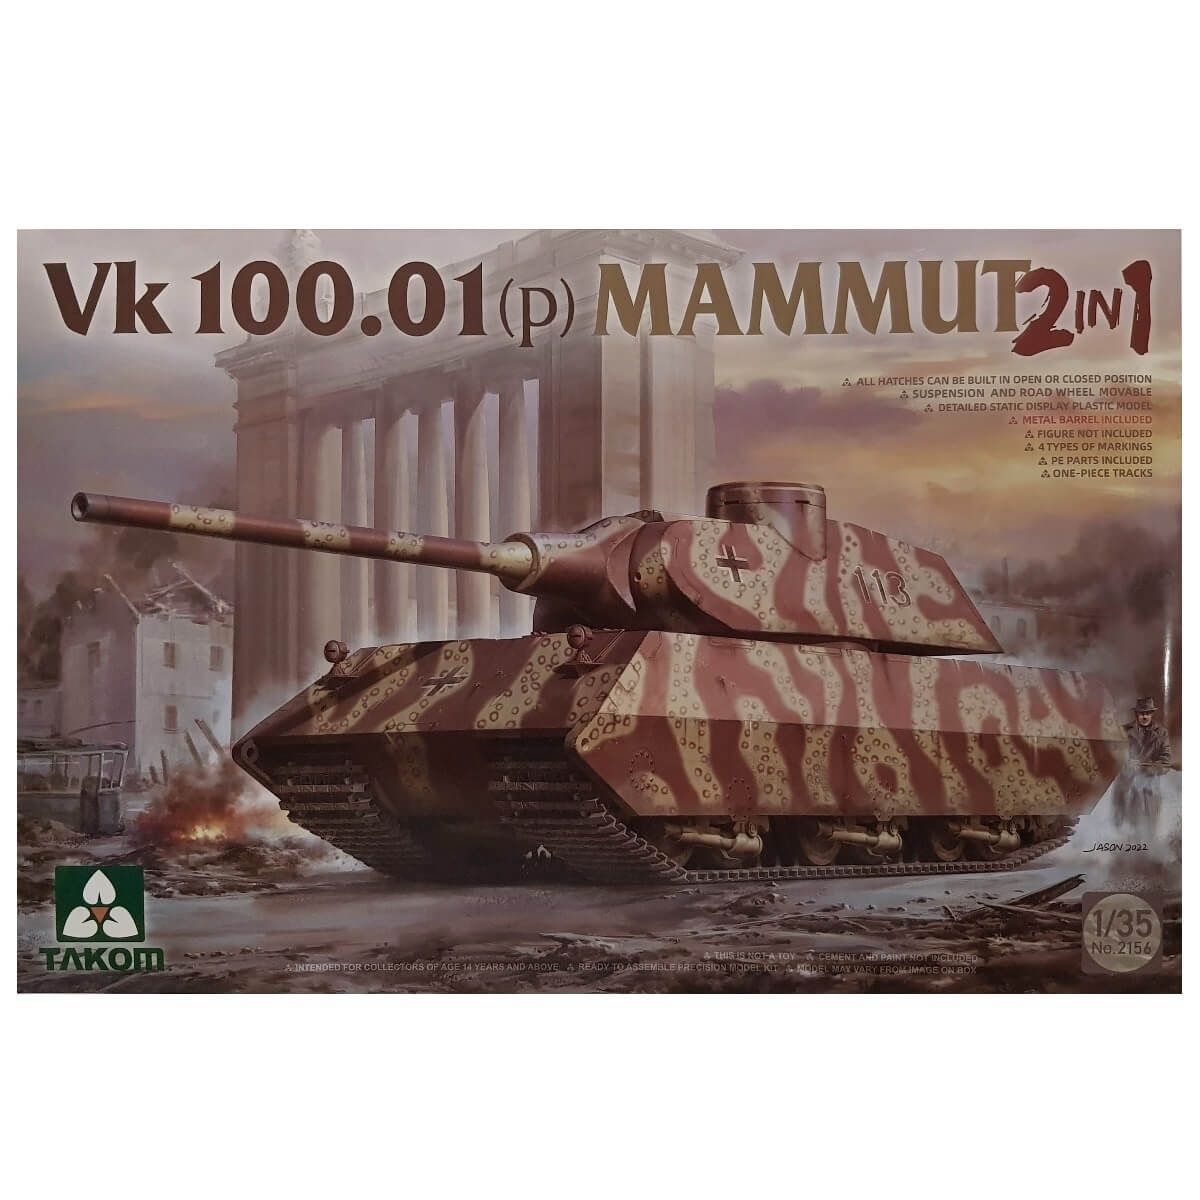 1:35 VK 100.01 (p) Mammut - TAKOM